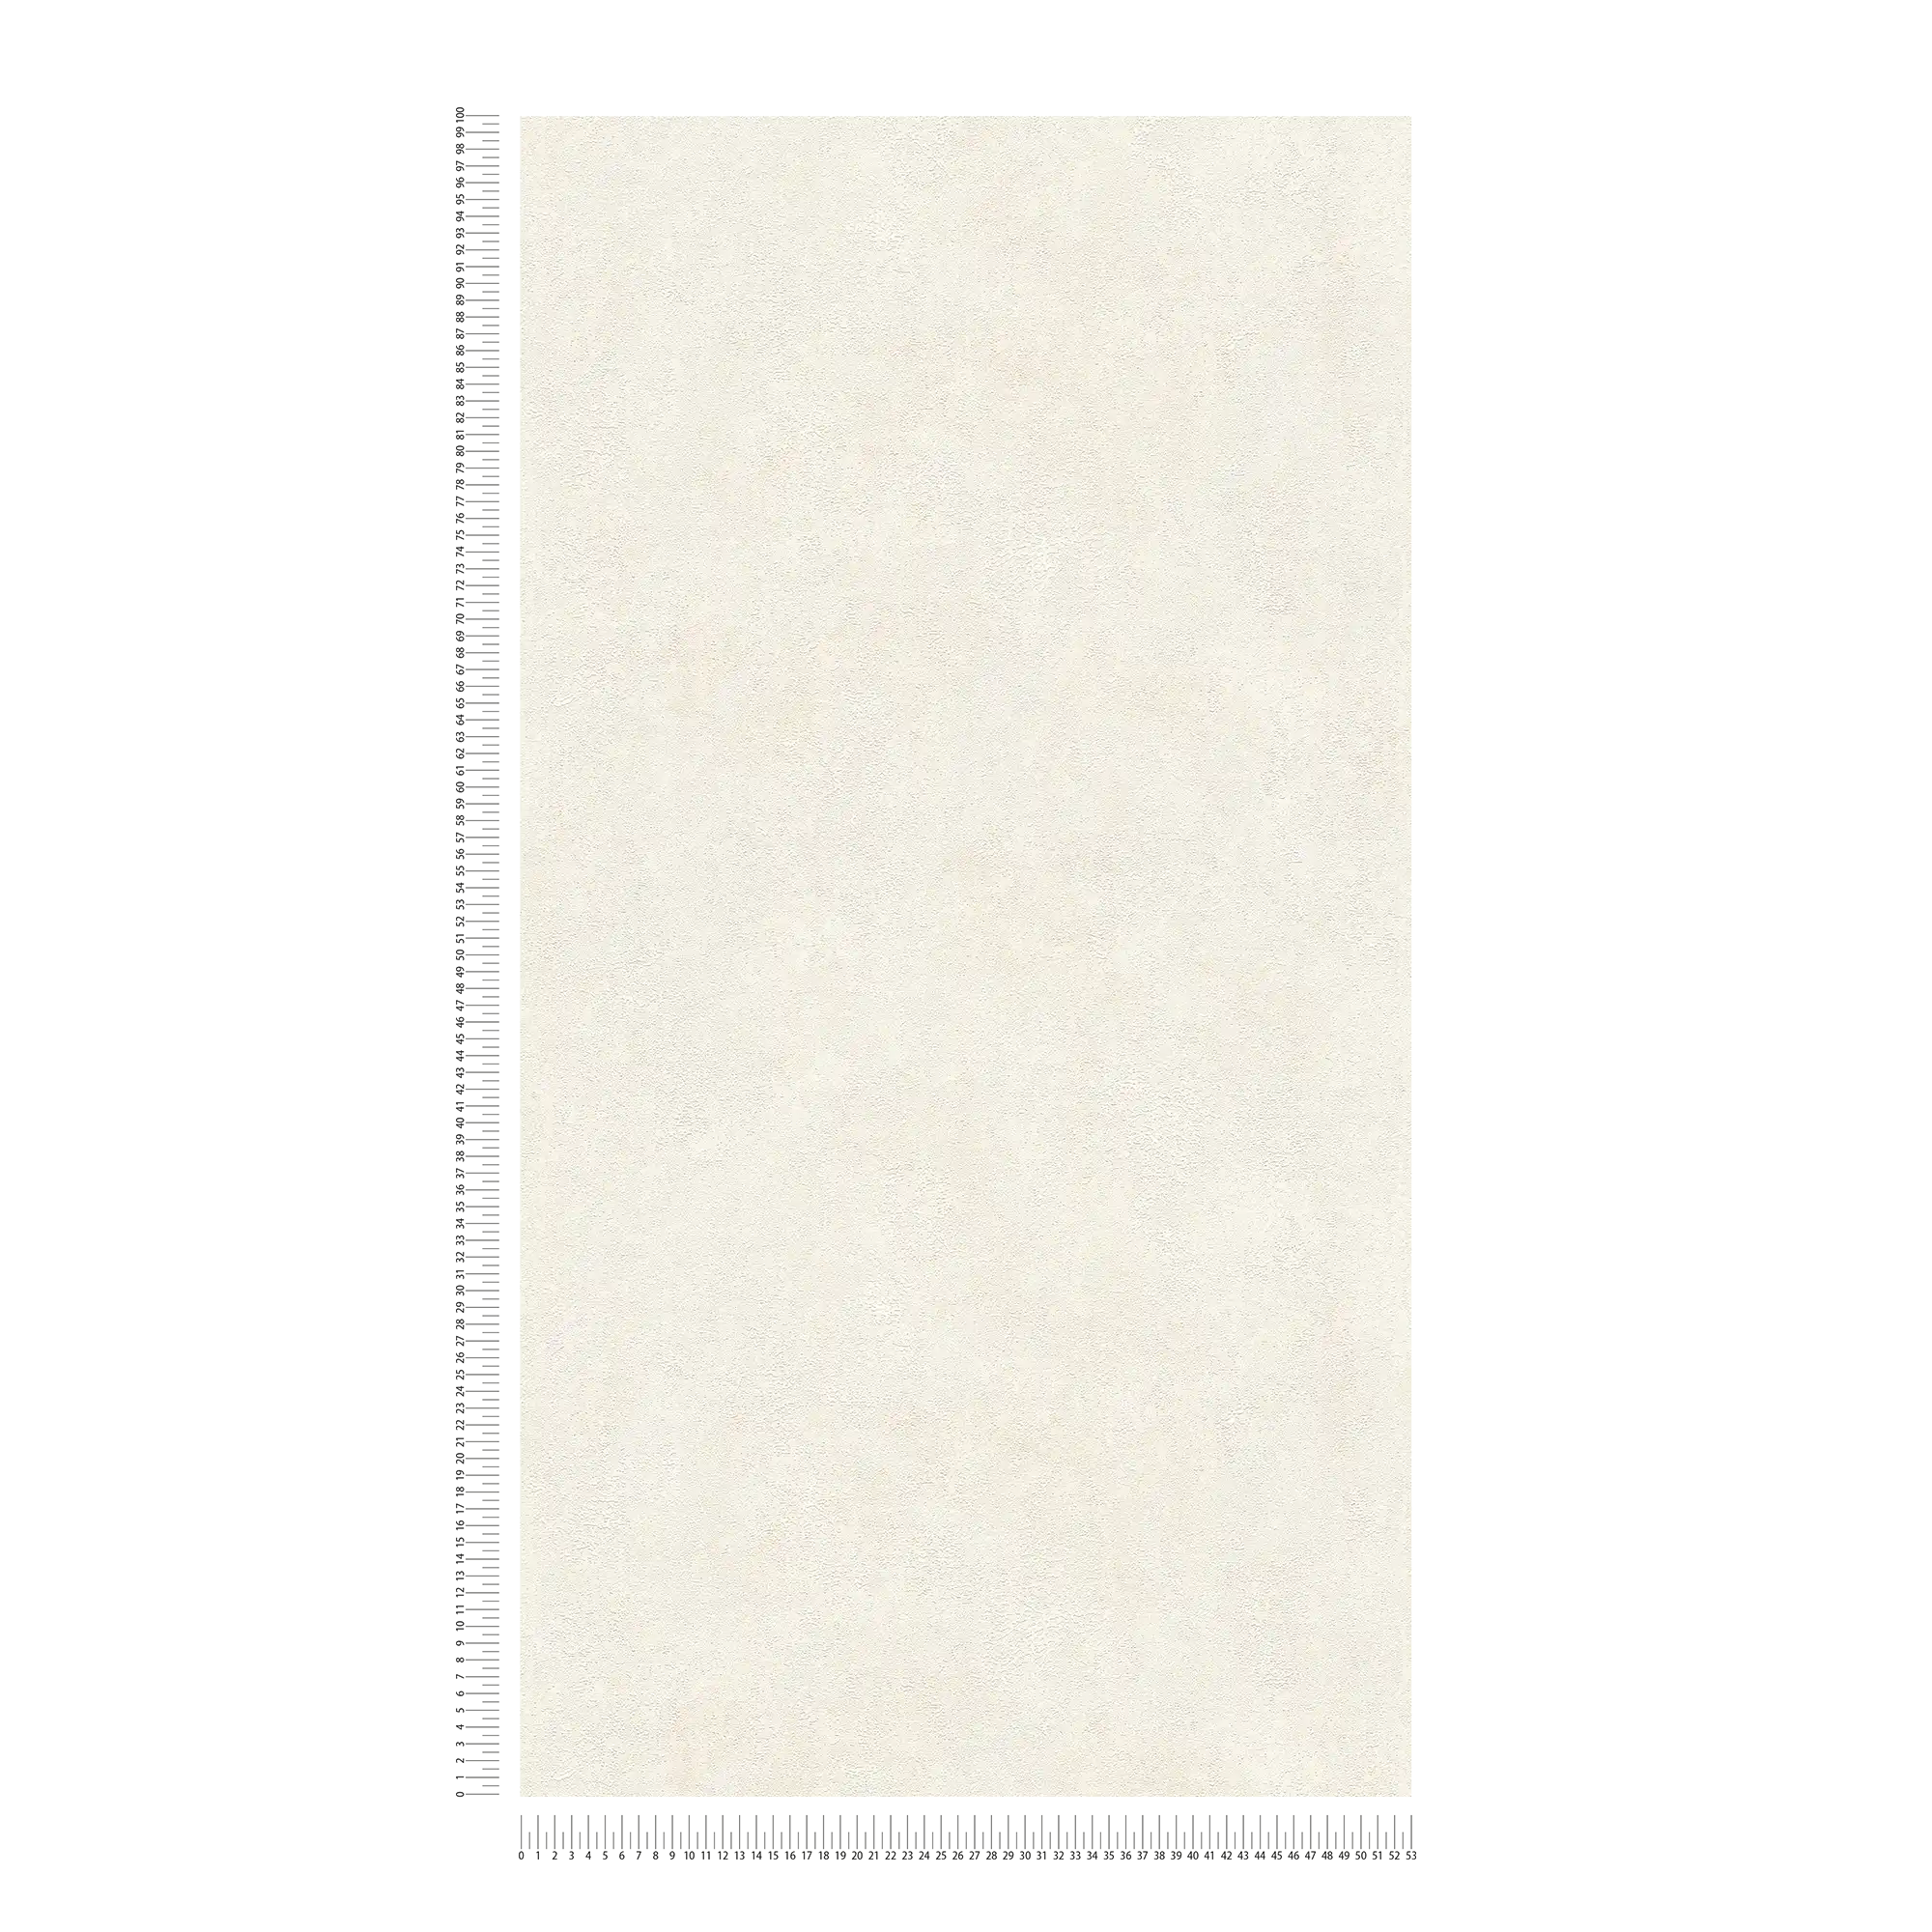             Carta da parati in tessuto non tessuto con leggeri accenti luccicanti - crema, bianco
        